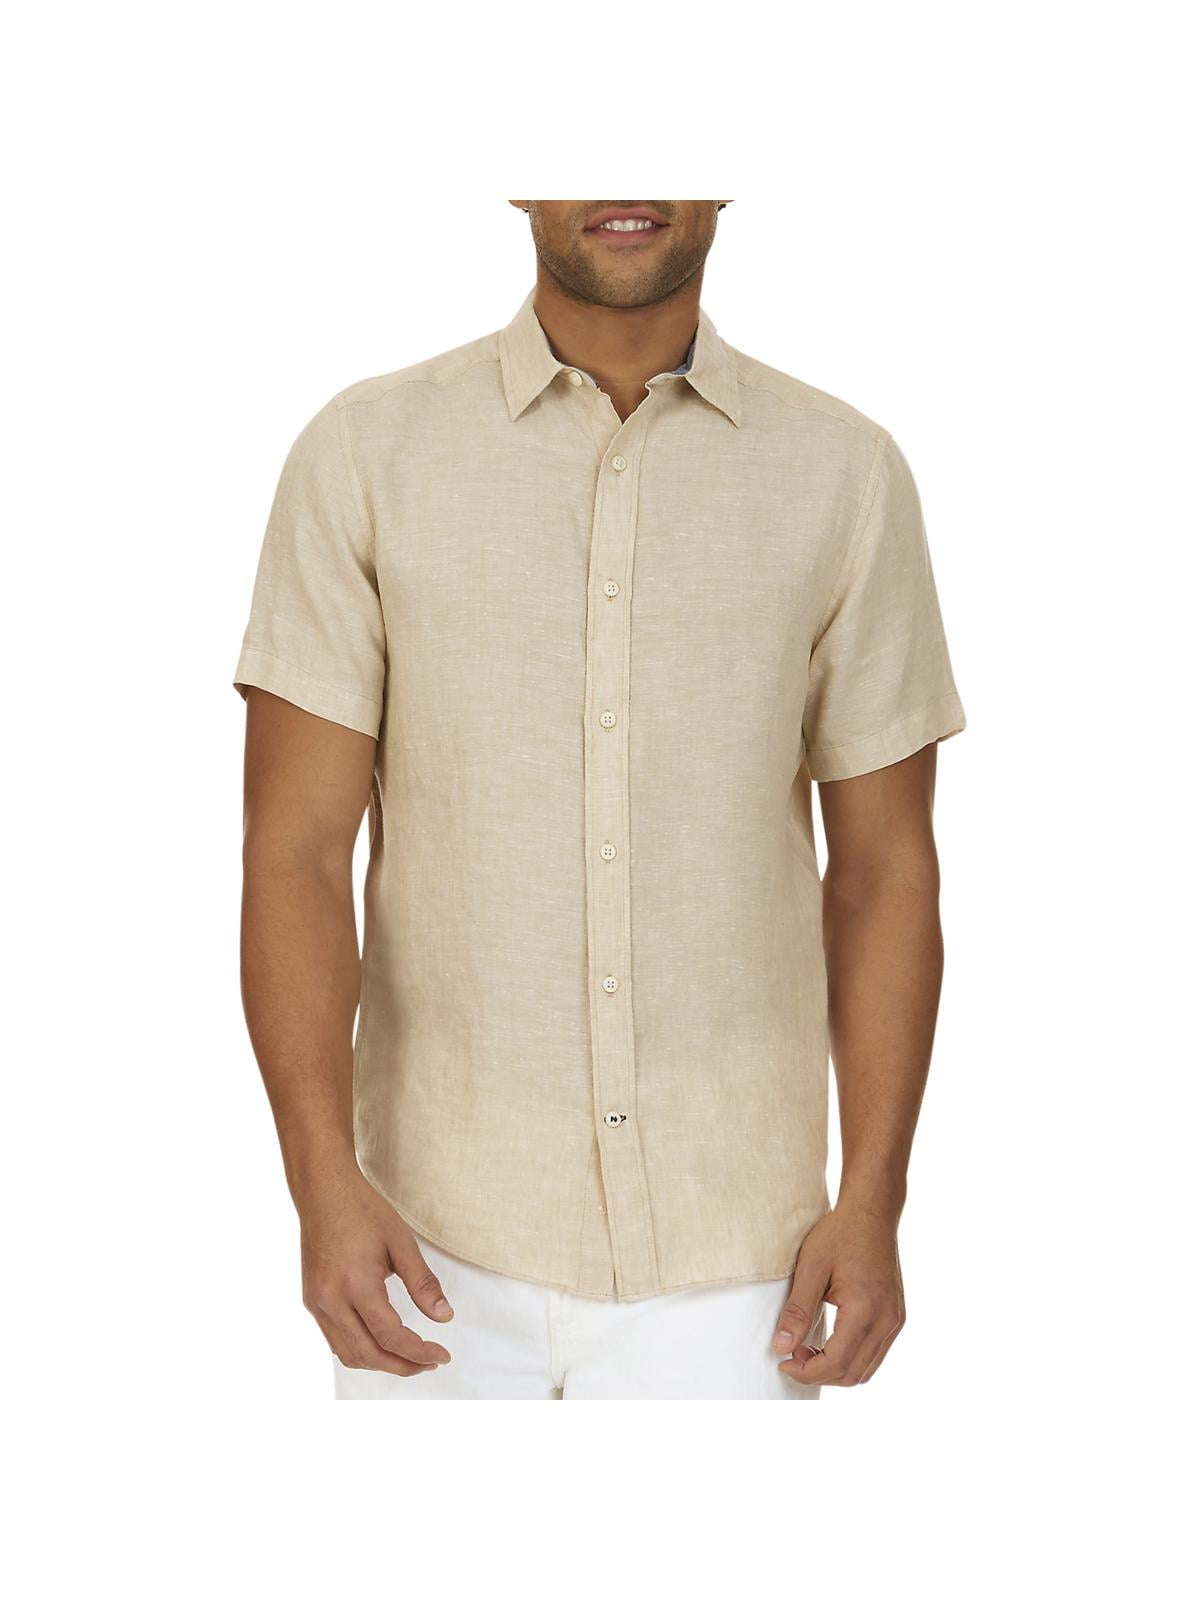 Nautica - Nautica Mens Linen Casual Button-Down Shirt Tan L - Walmart ...